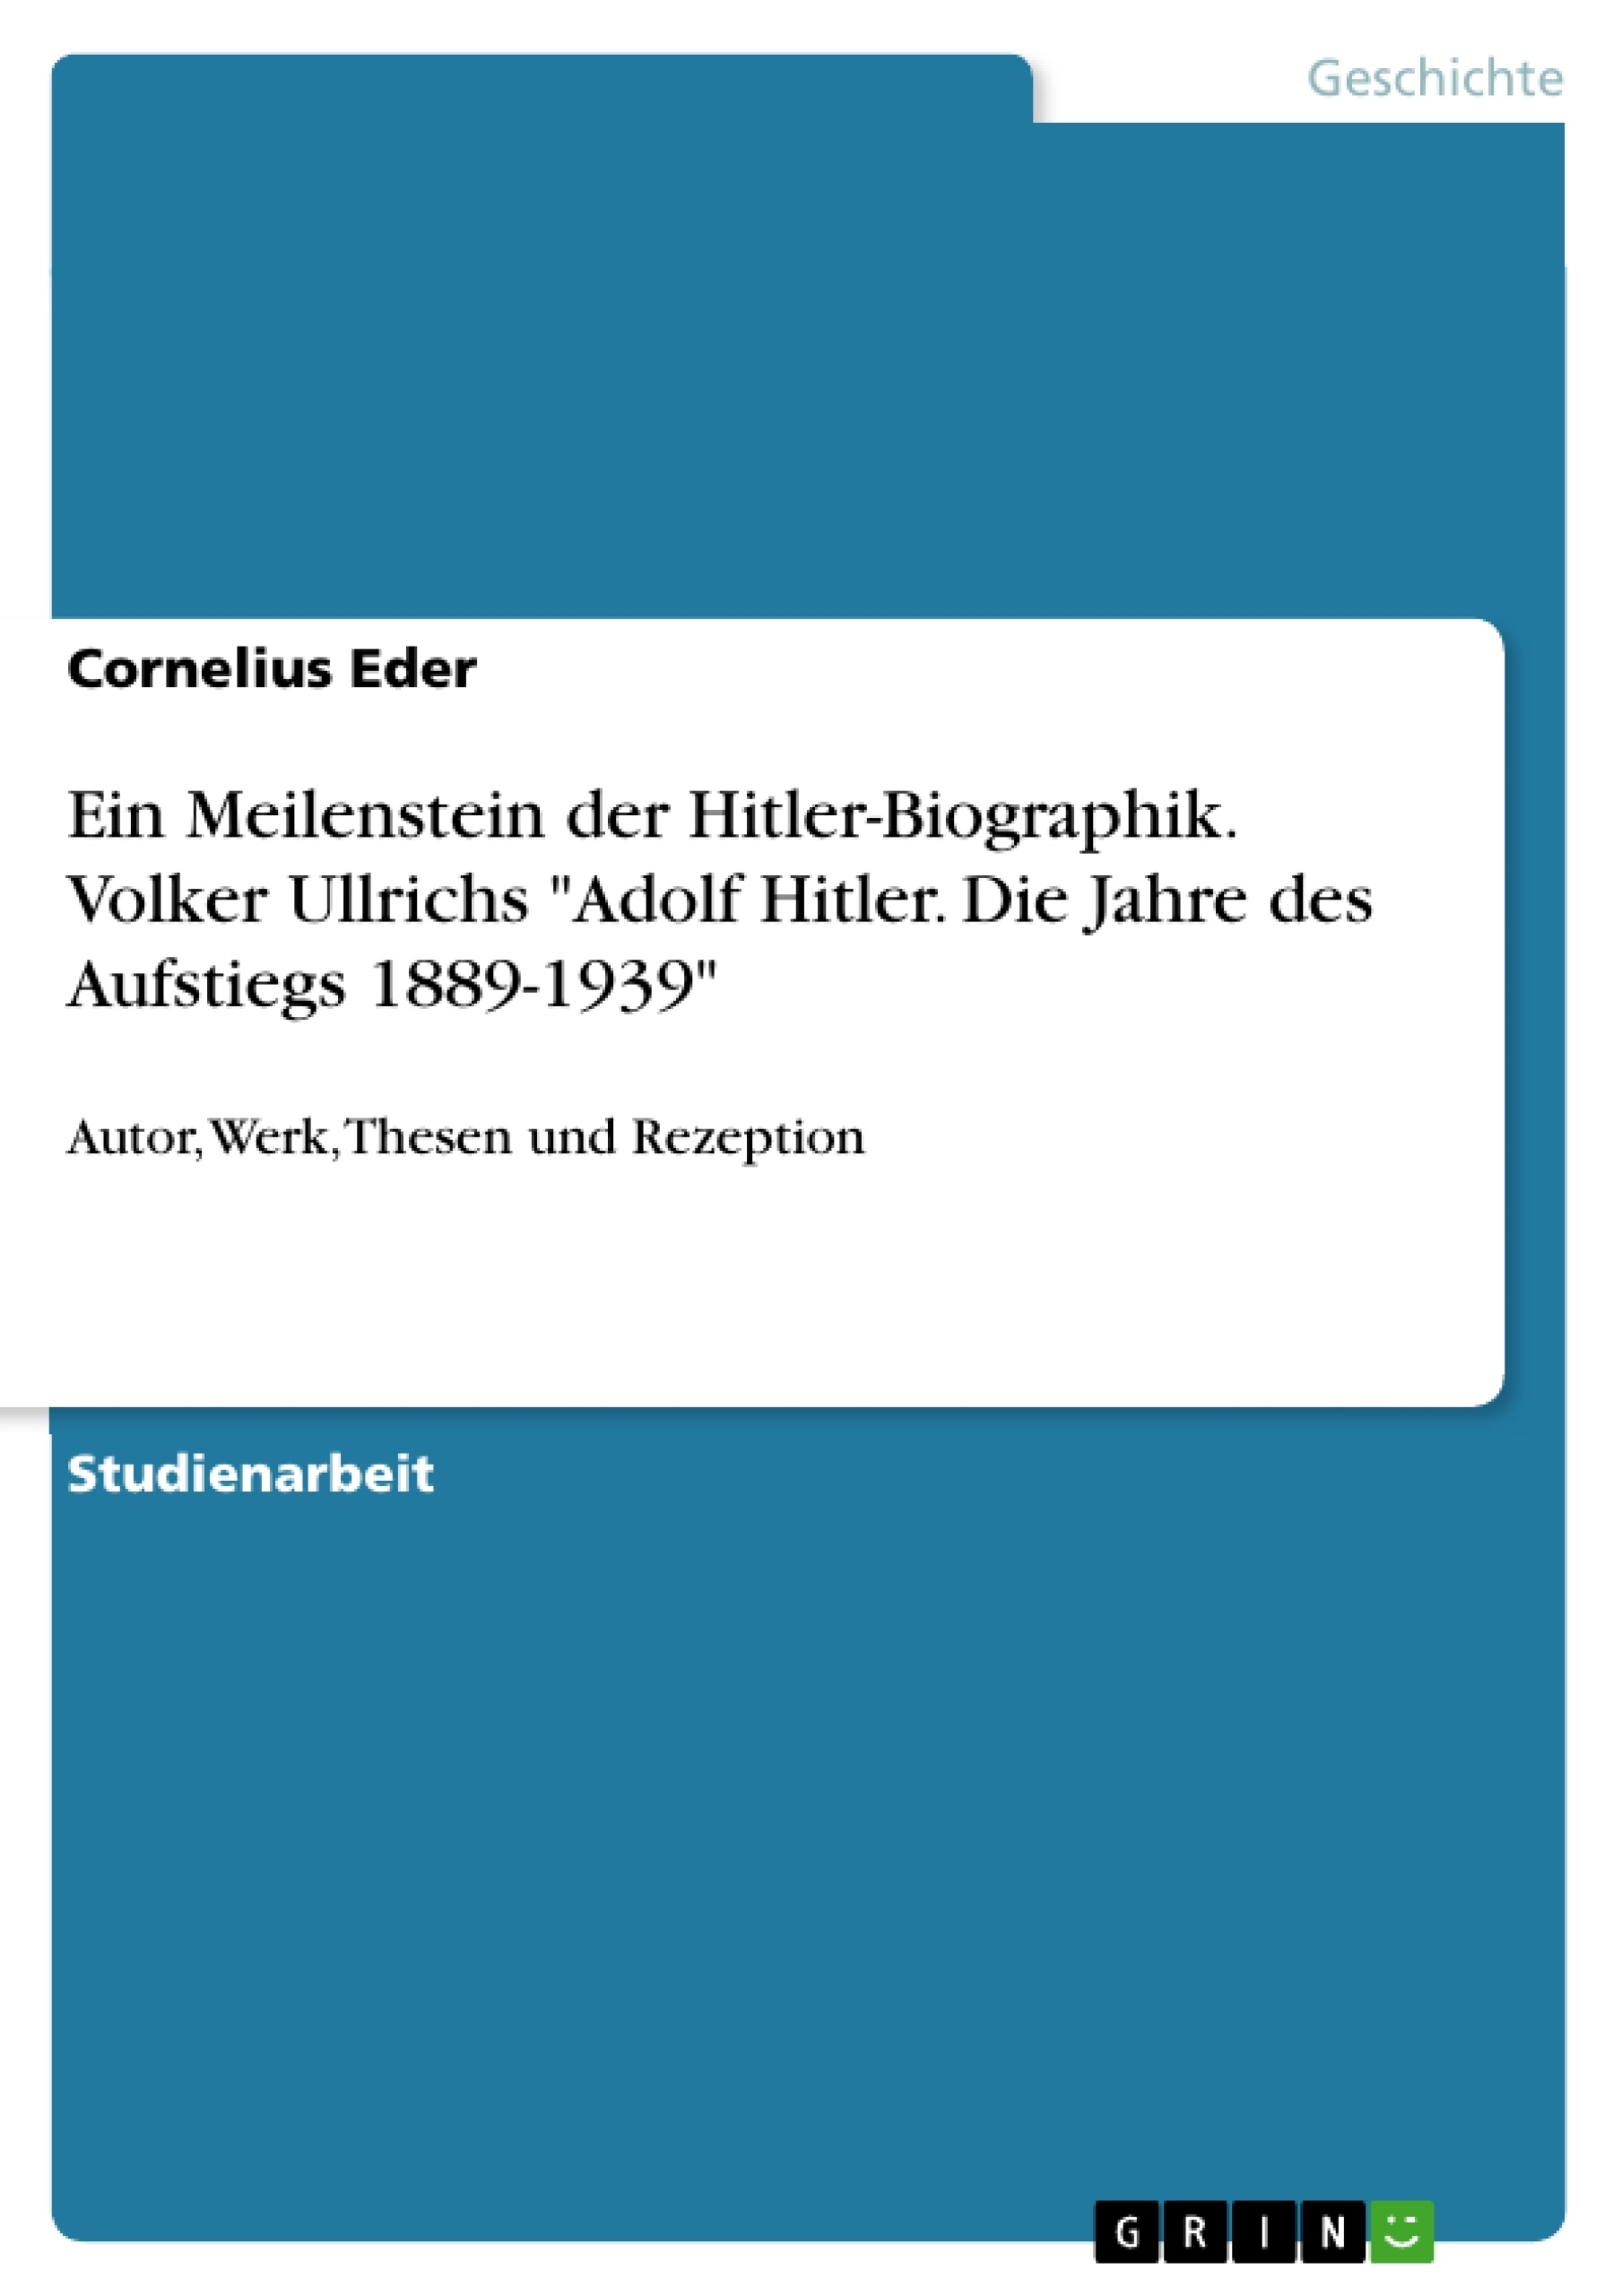 Título: Ein Meilenstein der Hitler-Biographik. Volker Ullrichs "Adolf Hitler. Die Jahre des Aufstiegs 1889-1939"